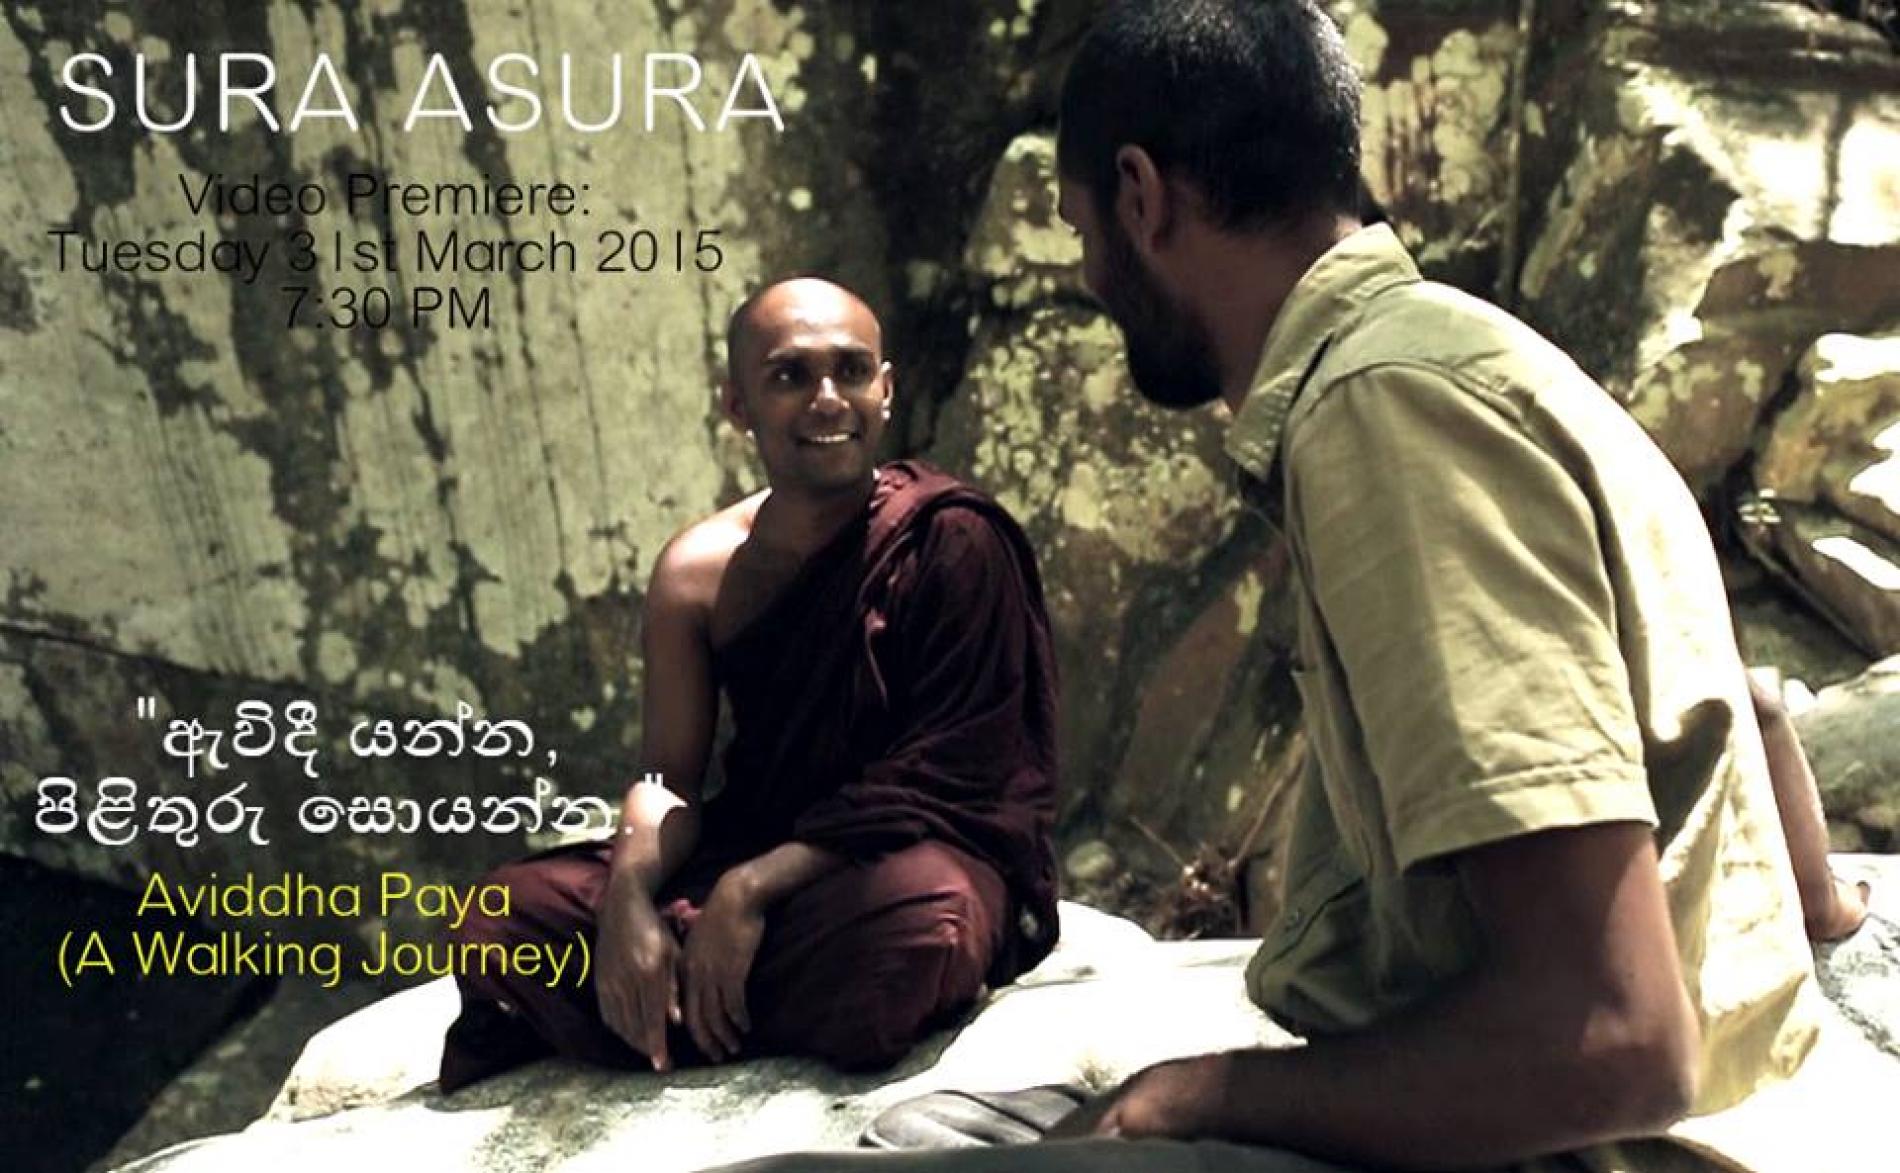 Sura Asura: Aviddha Paya (A Walking Journey)